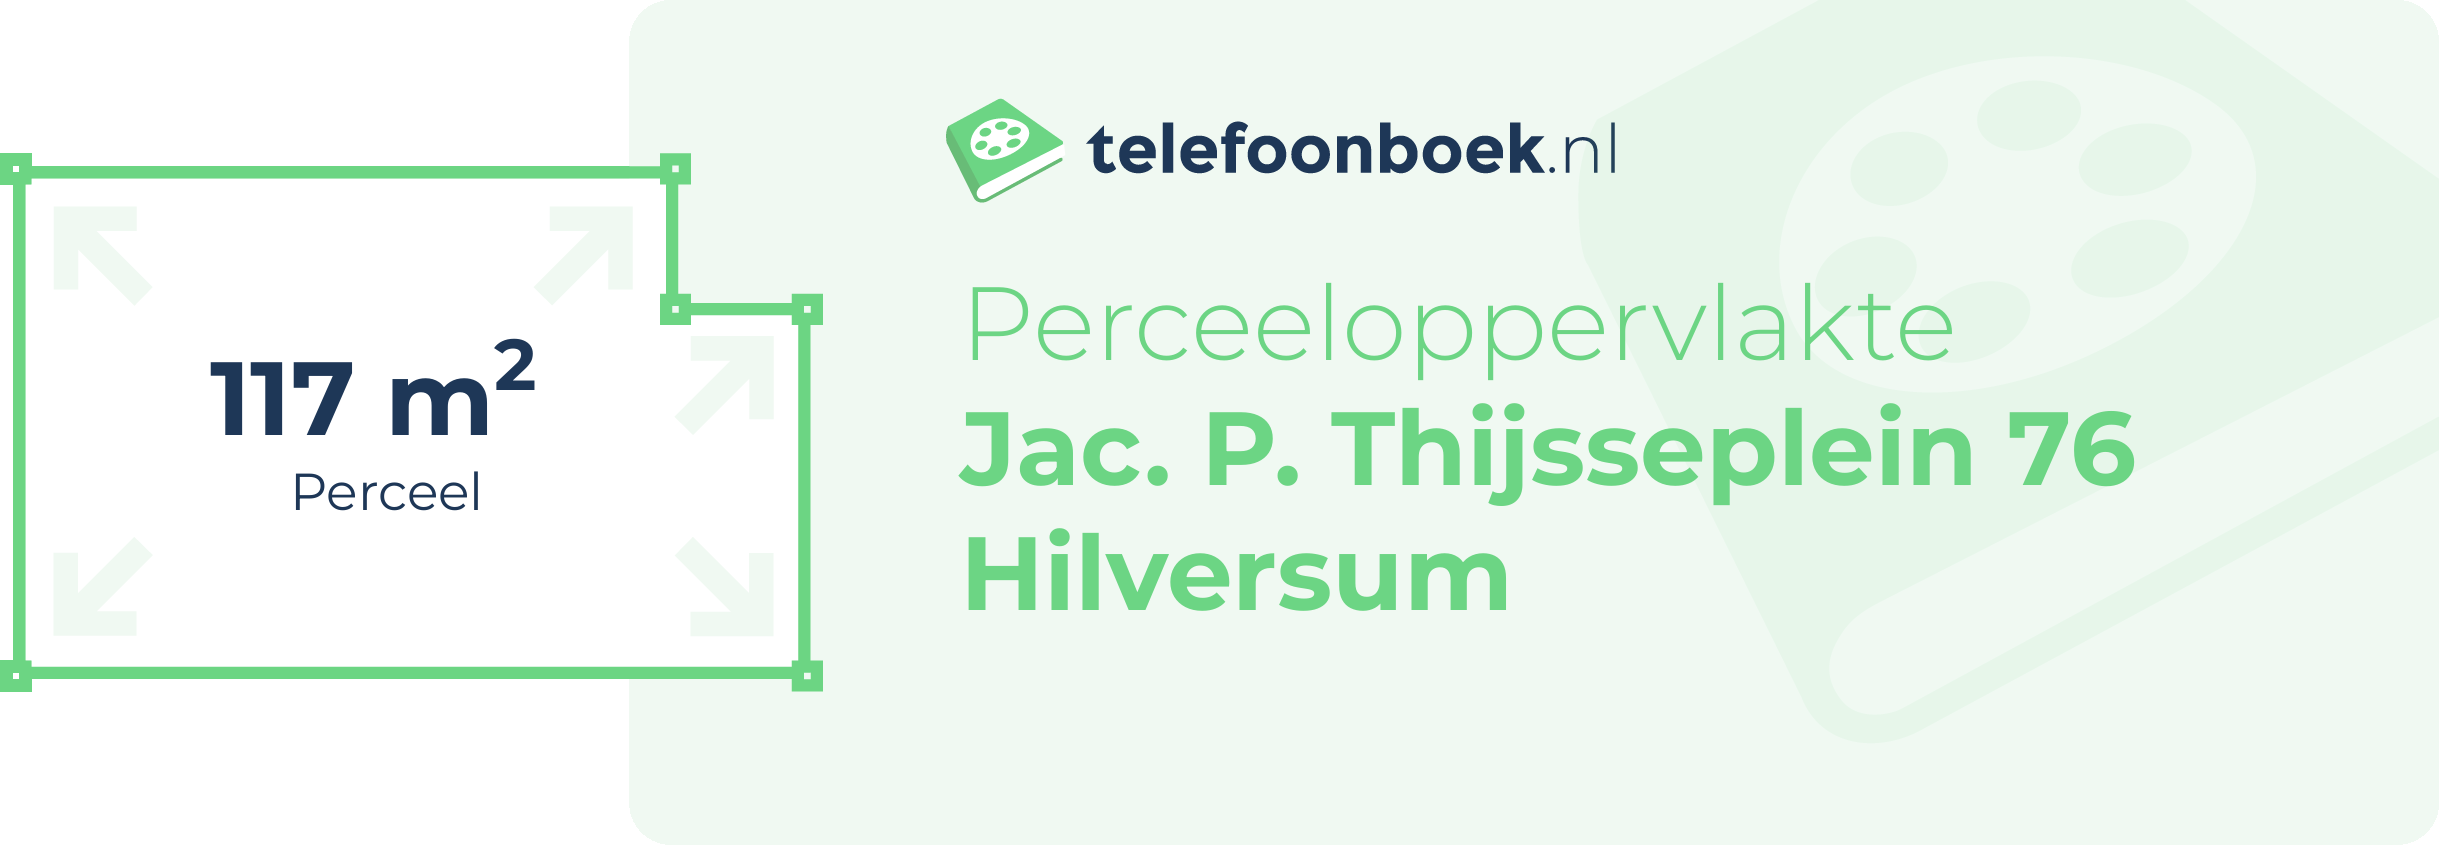 Perceeloppervlakte Jac. P. Thijsseplein 76 Hilversum